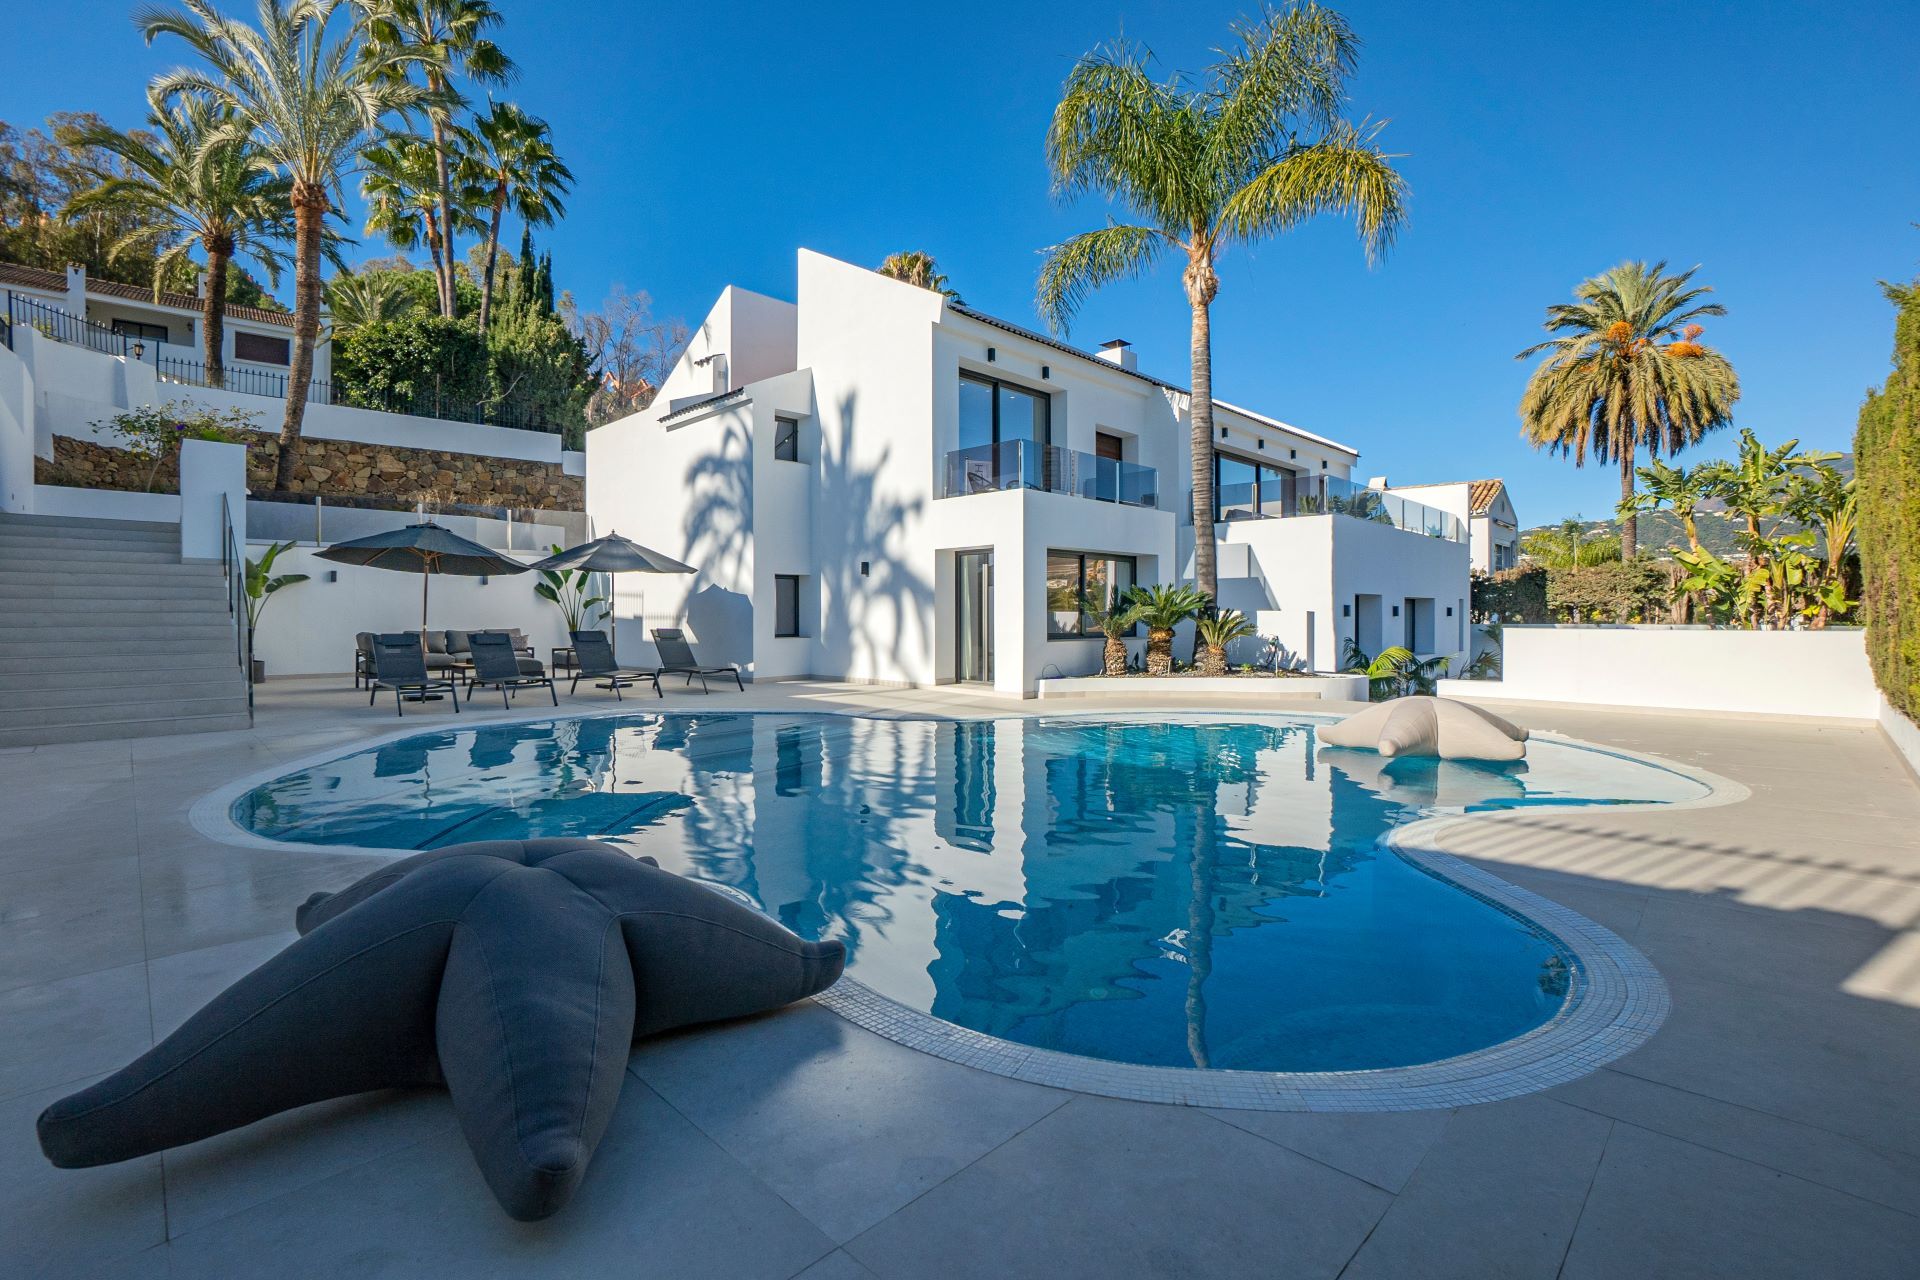 Mediterranean style Villa in the Golf Valley | Engel & Völkers Marbella